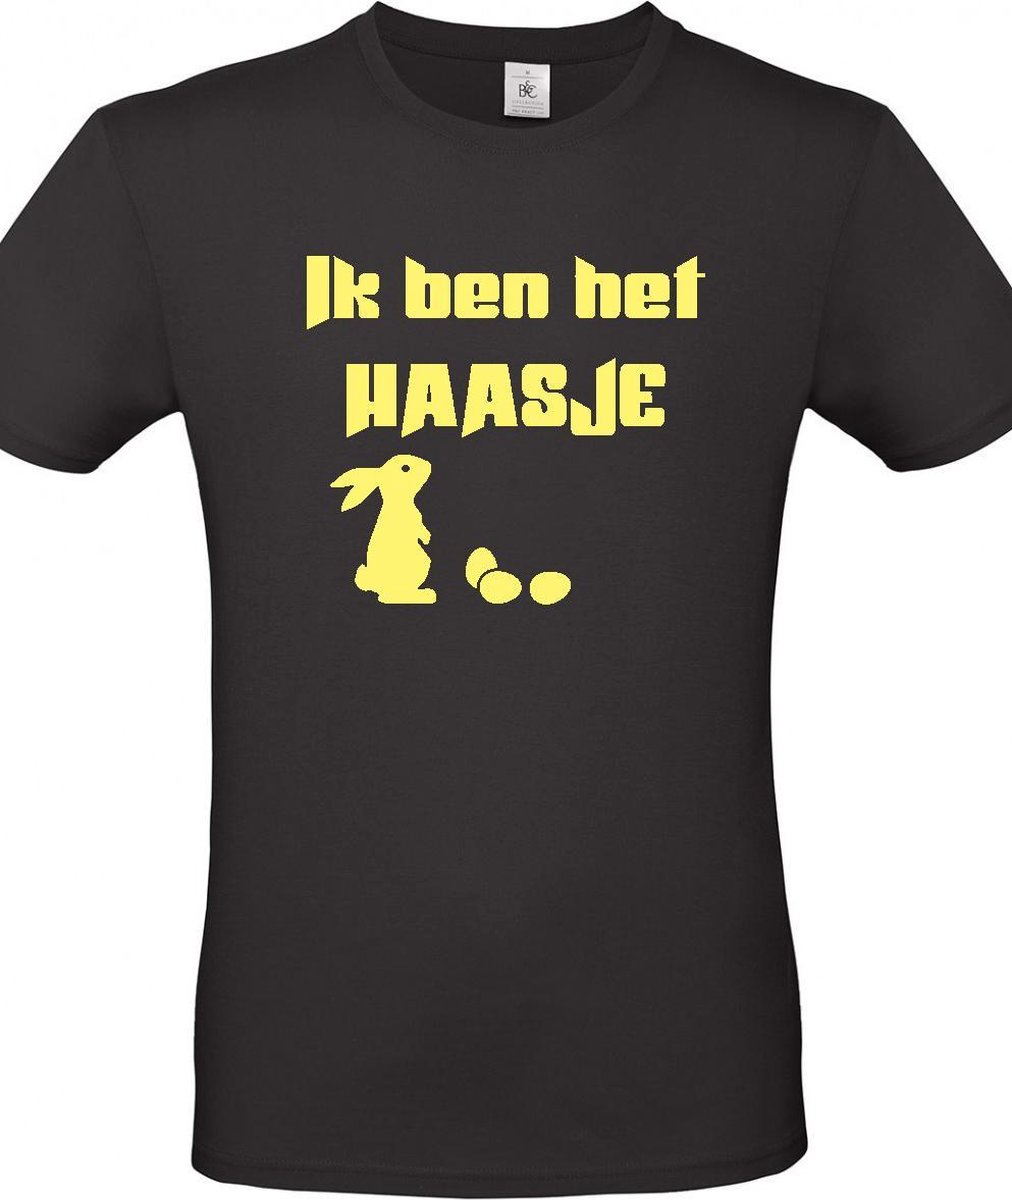 T-shirt met opdruk “Ik ben het haasje” – Zwarte shirt met gele opdruk -  Merk B&C – Herojodeals- Leuk voor Pasen